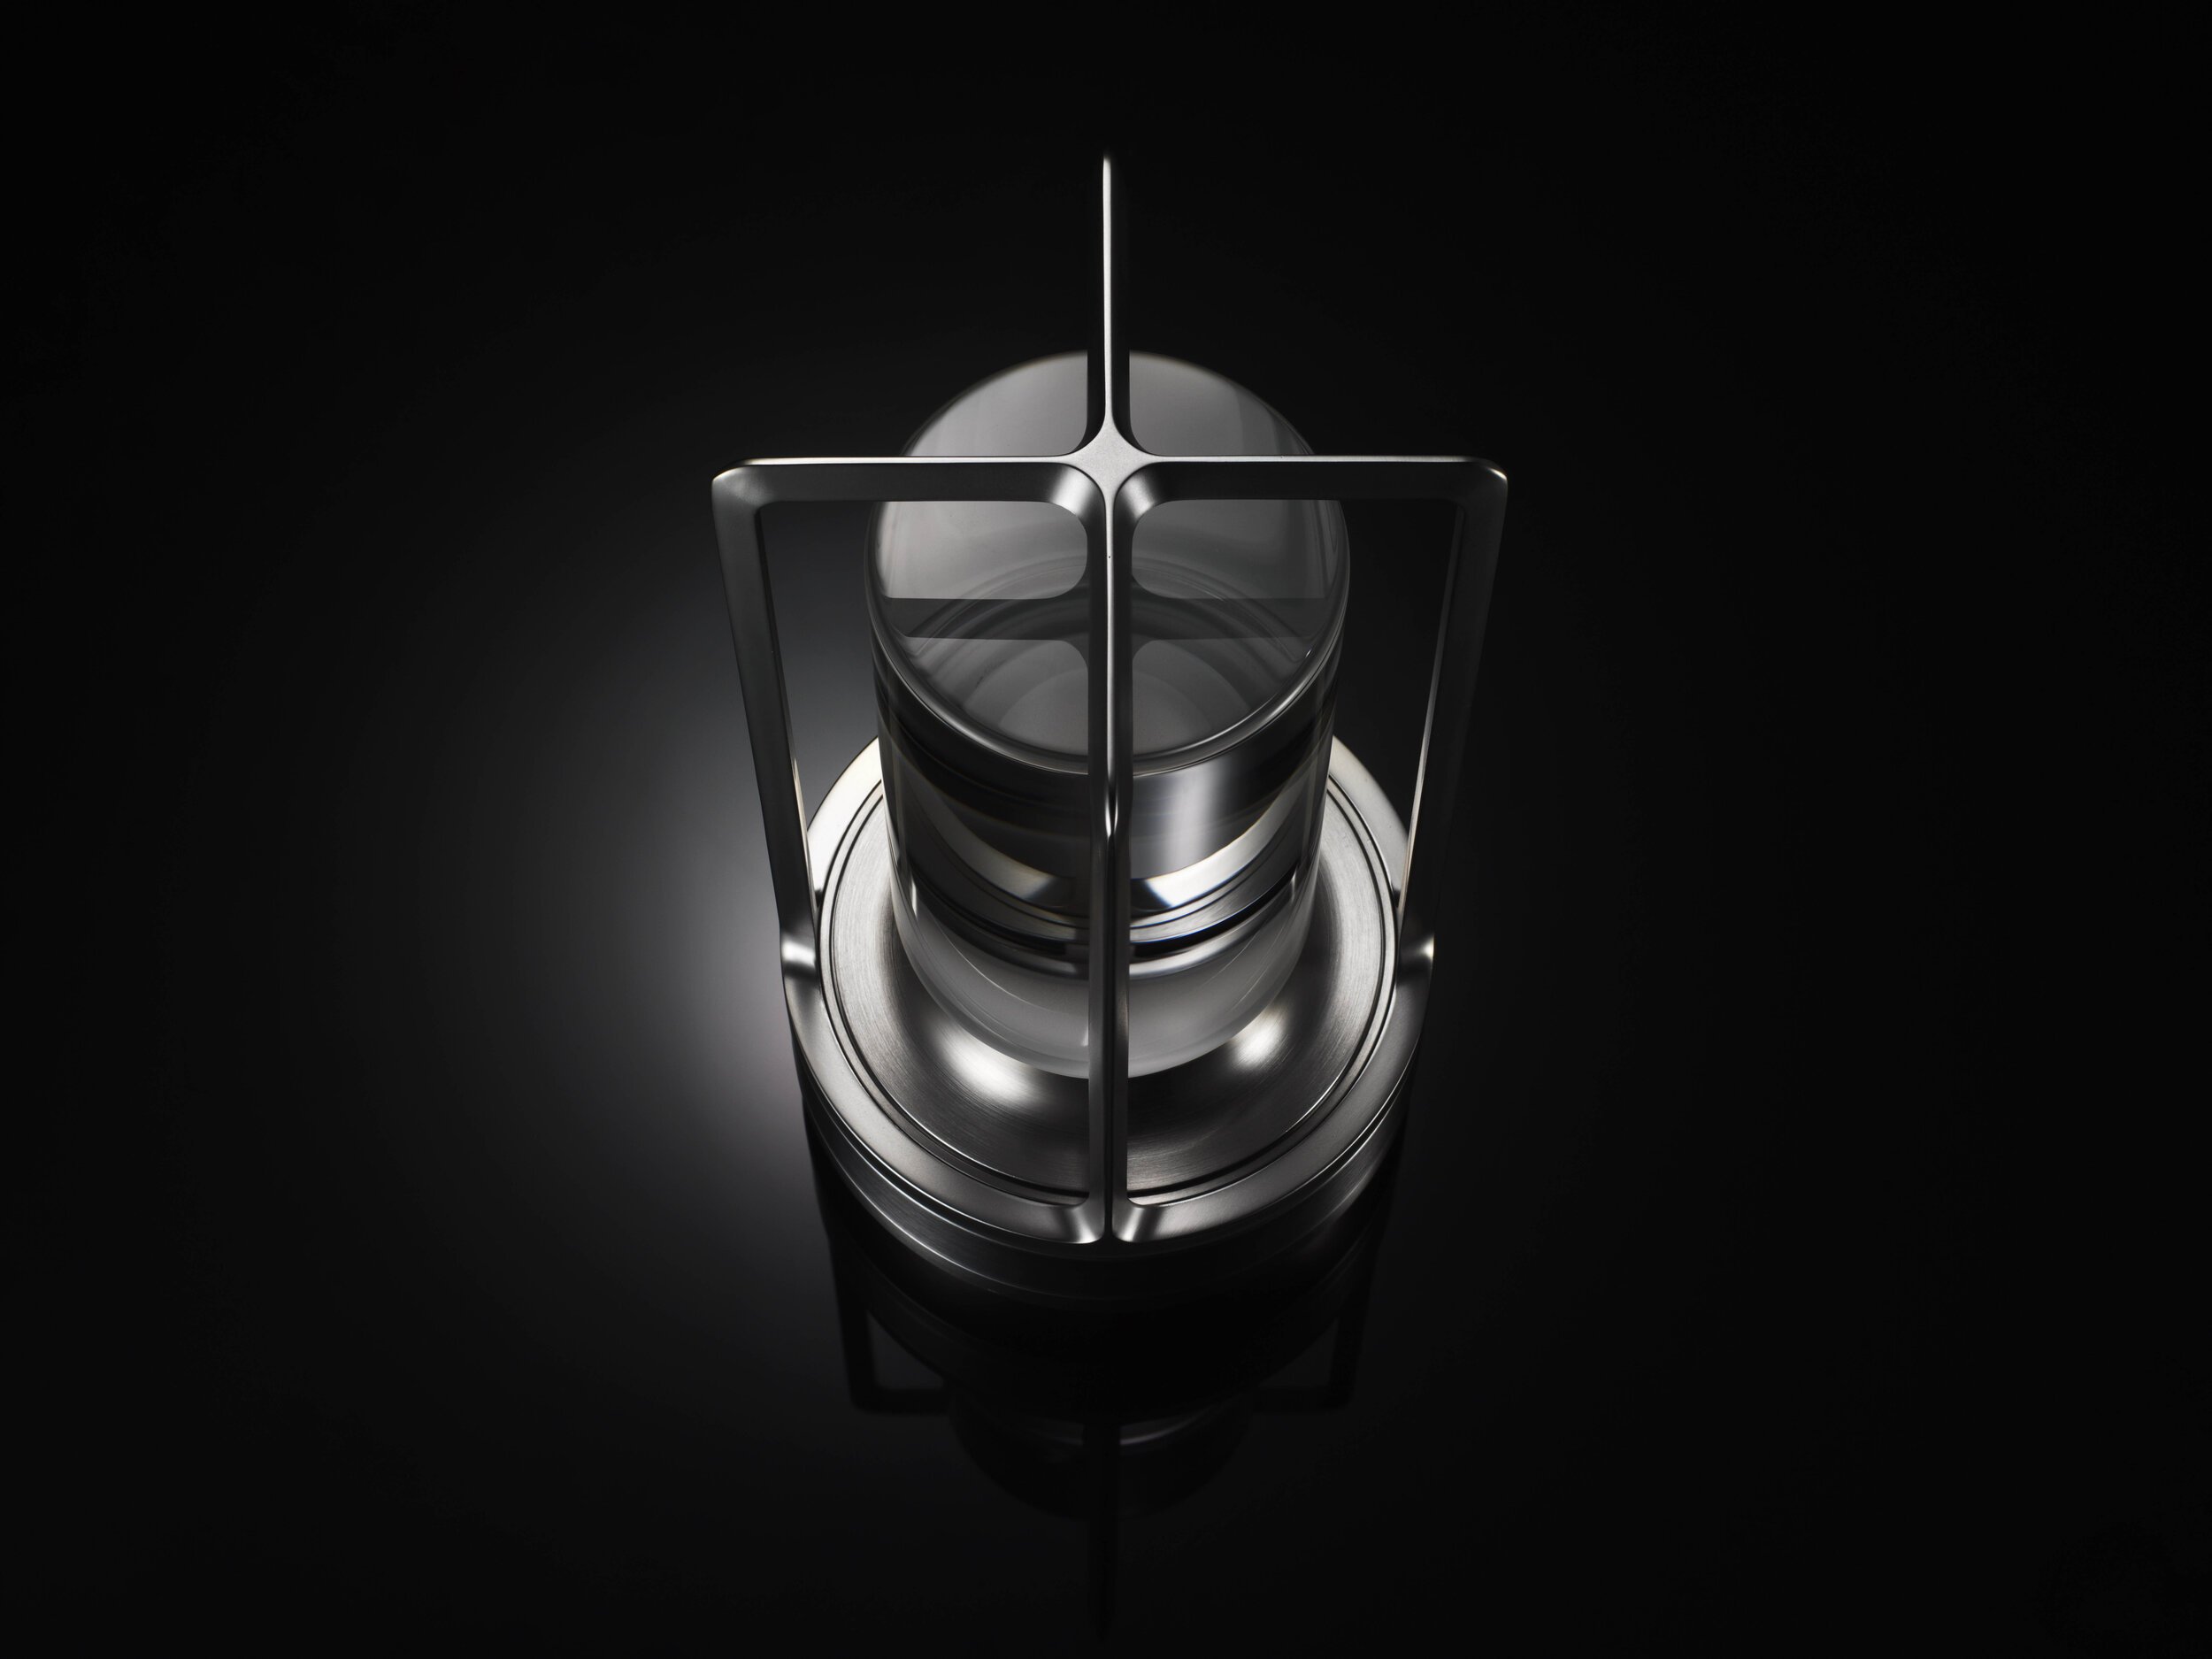  Nao Tamura 田村奈穂がデザインを手掛けた、アンビエンテックの照明器具「TURN+（ターンプラス）」のディテール。ケージは十字形にデザインされた 